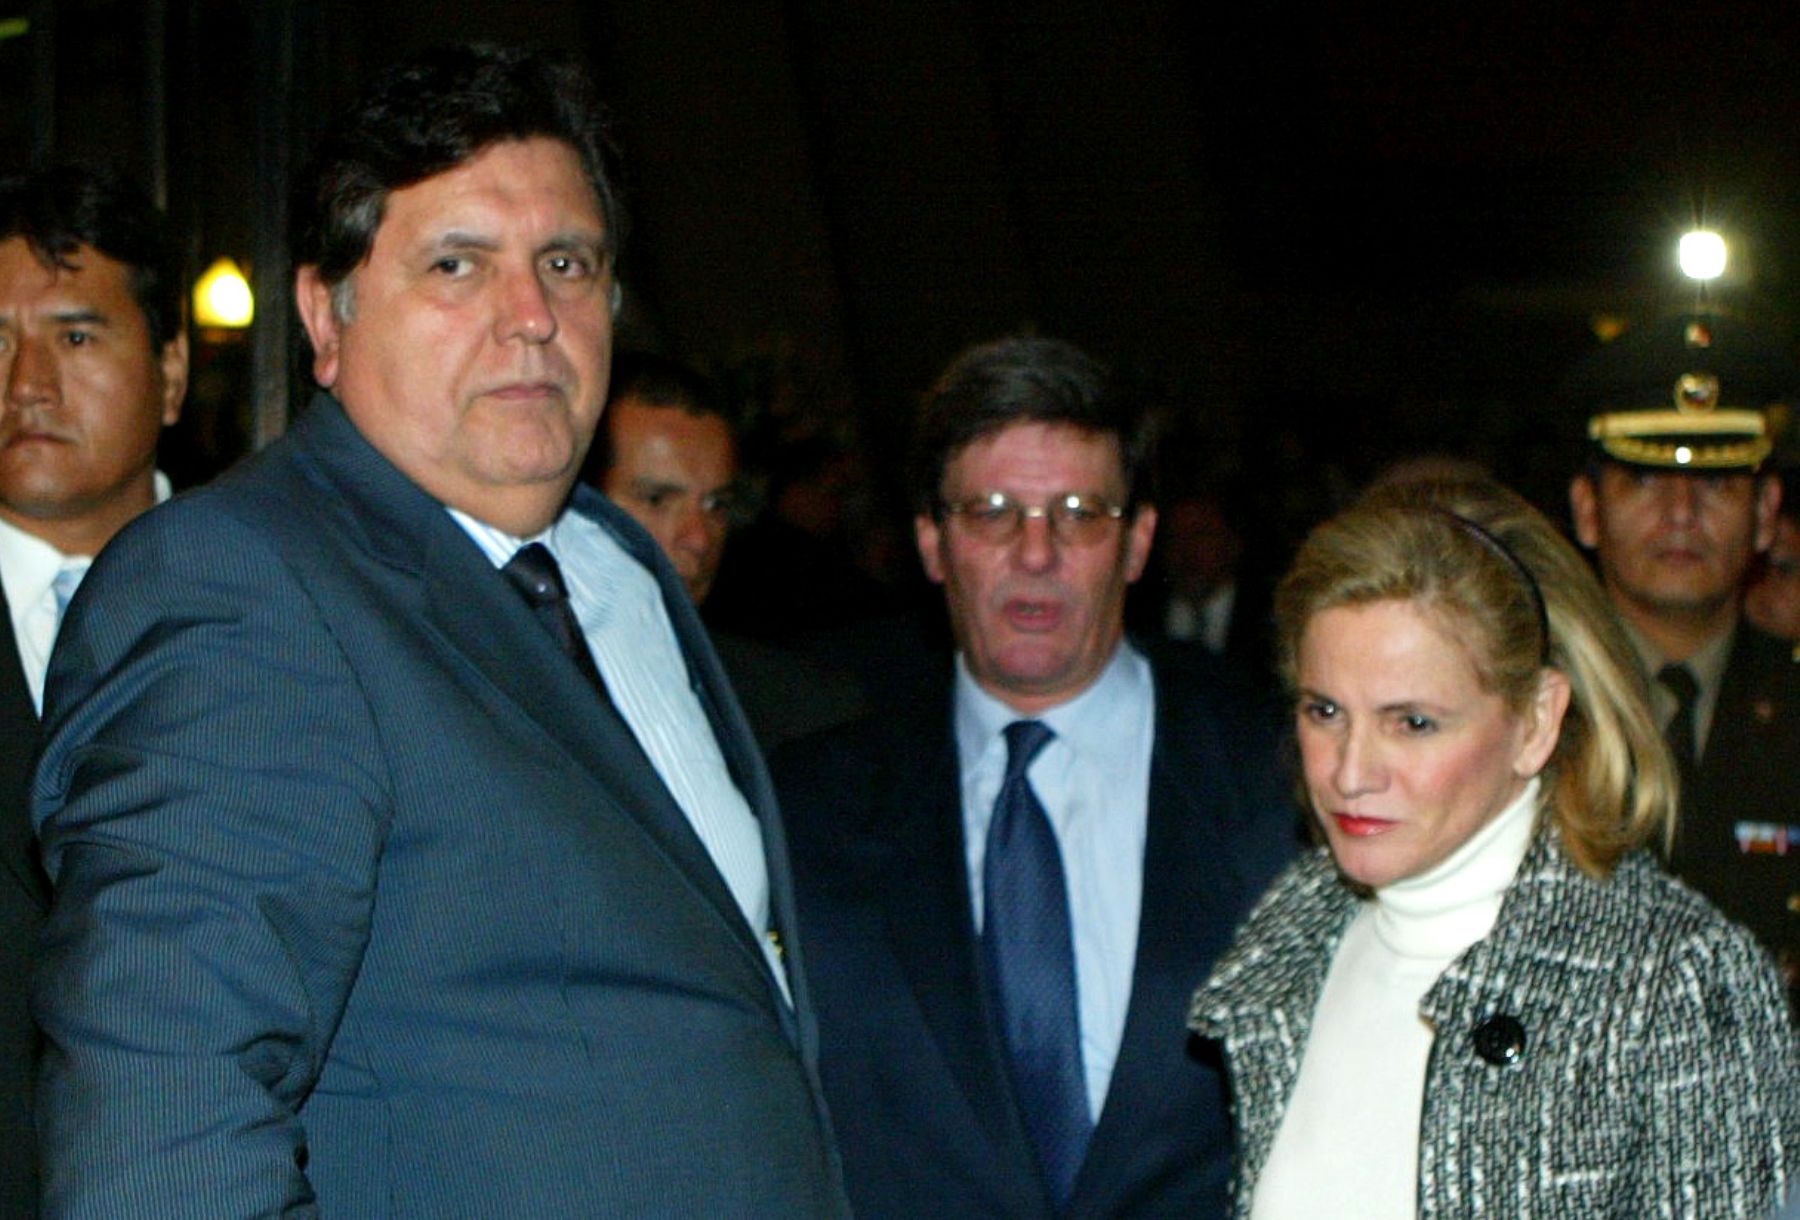 Presidente Alan Garcia, y su señora esposa Pilar Nores acompañan al Ministro Rafael Rey. Foto: ANDINA/Rubén Grández